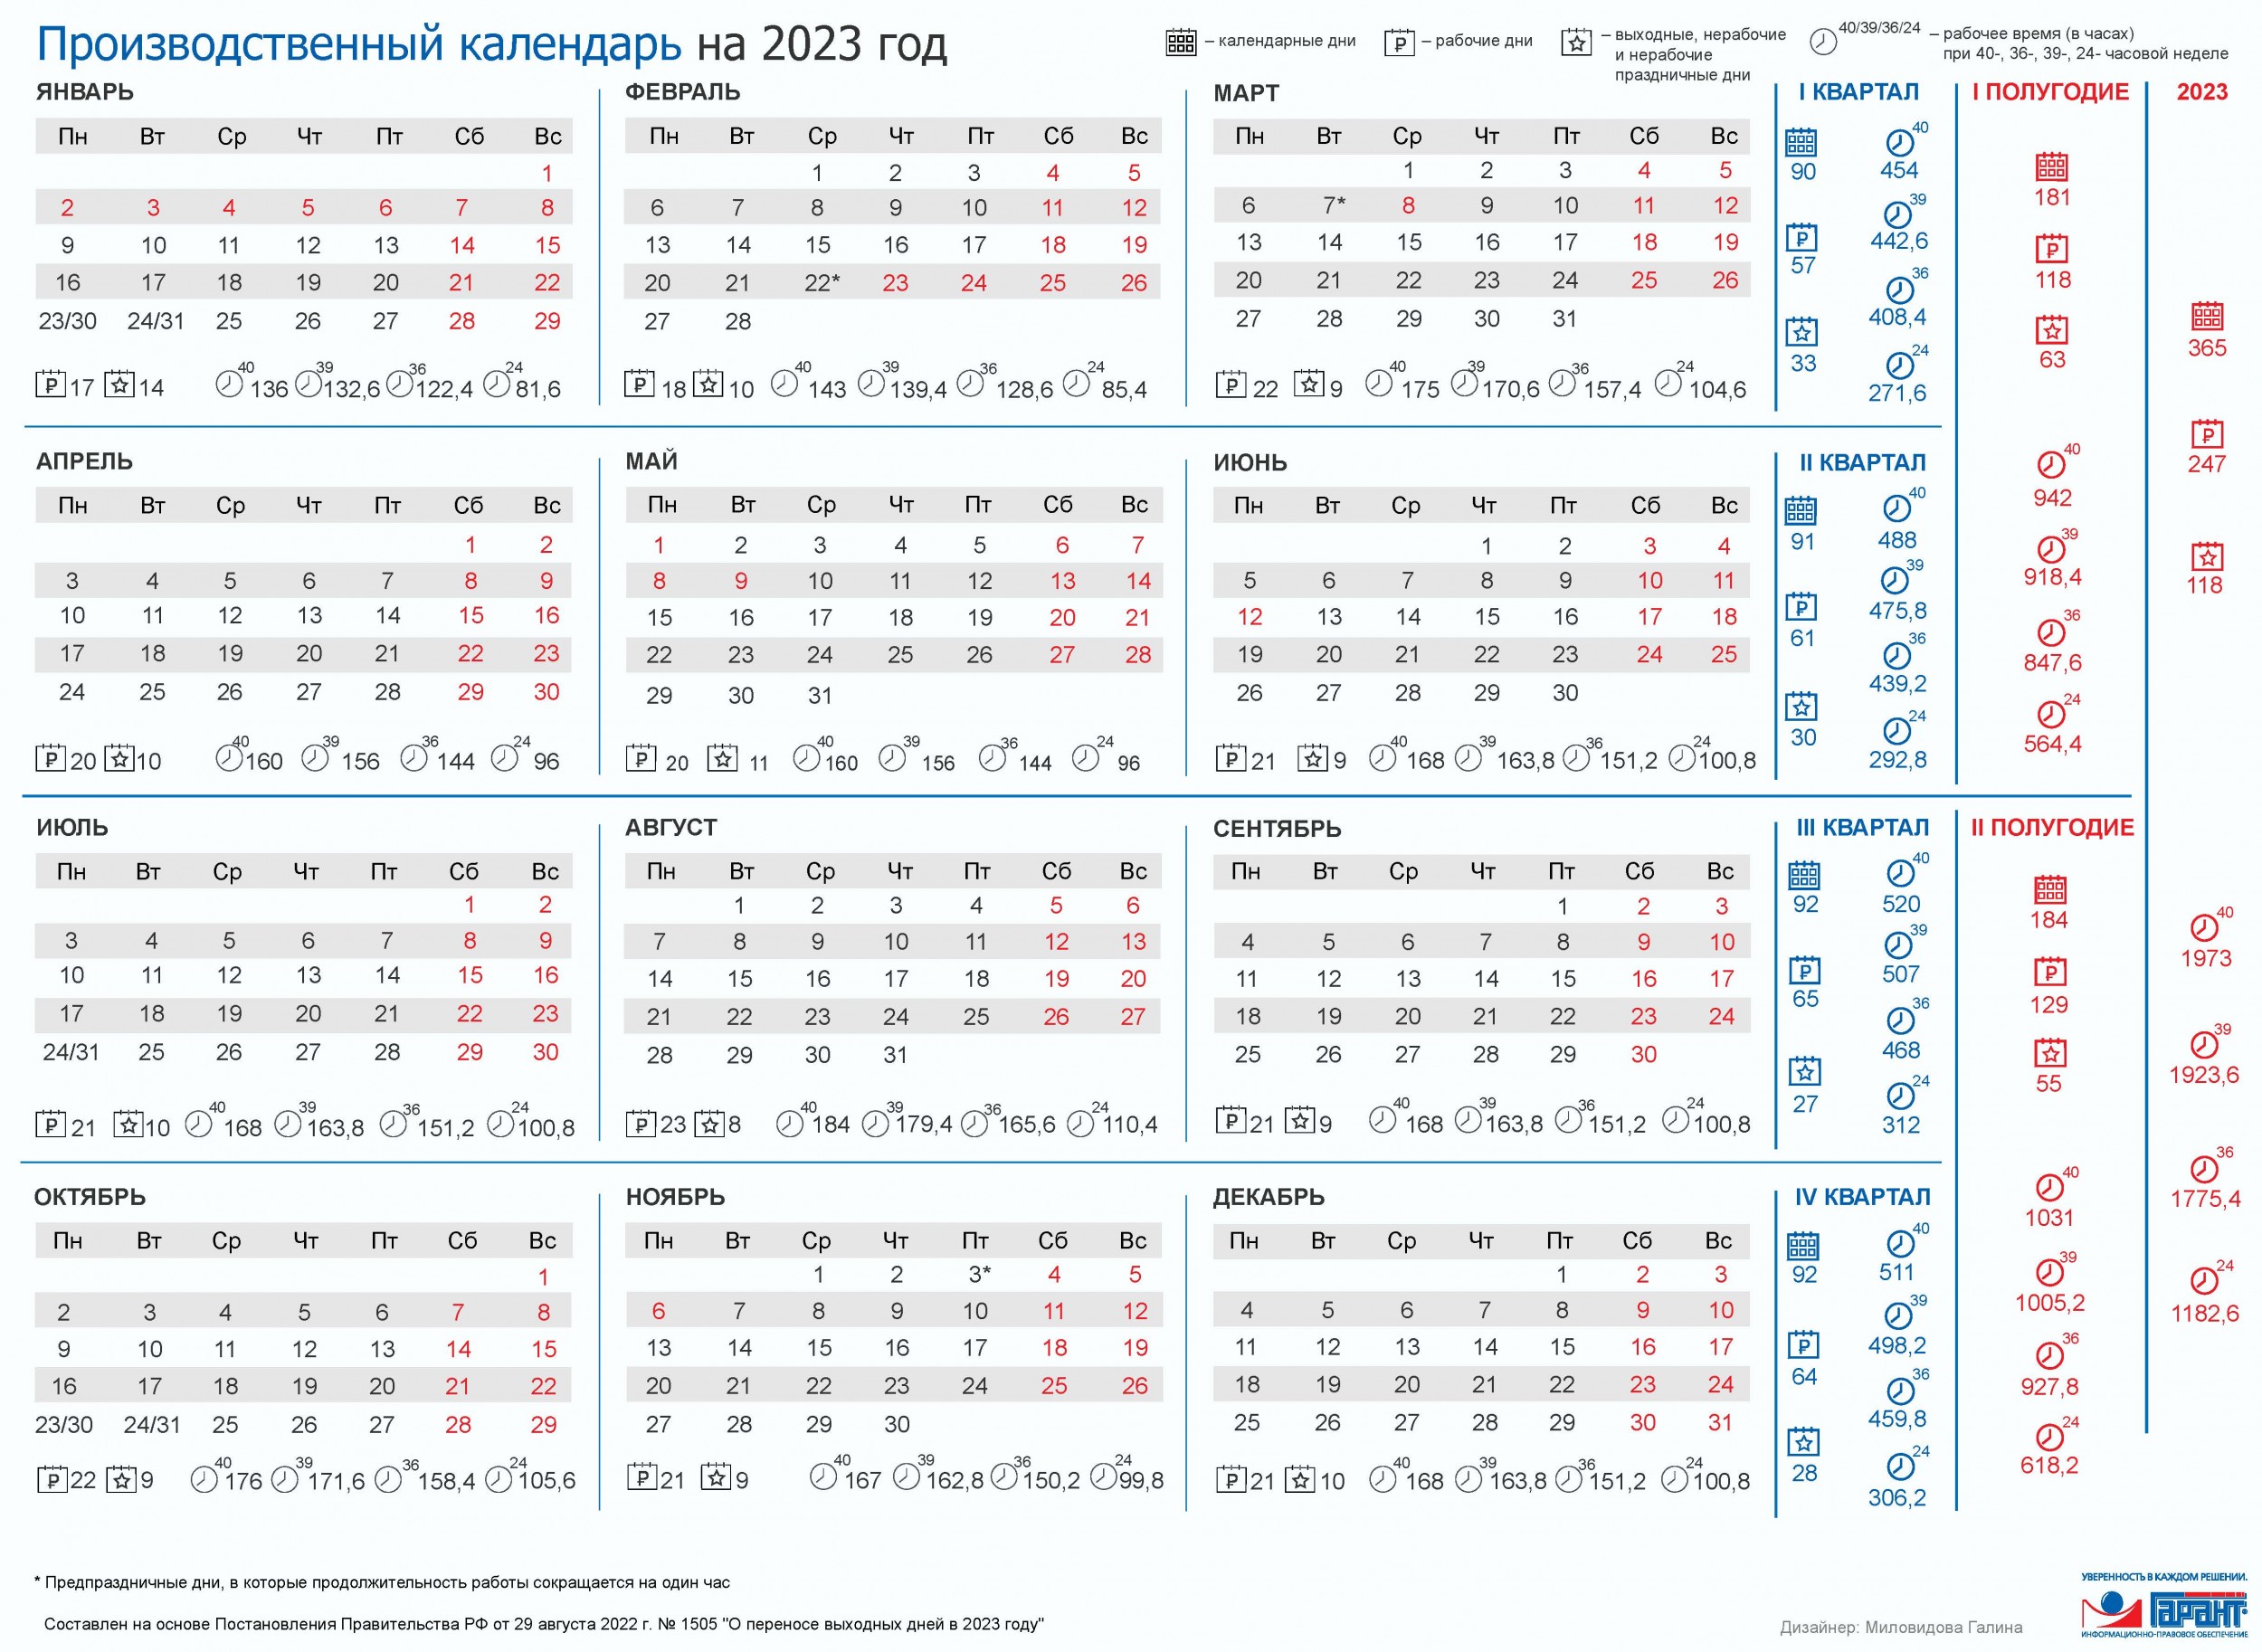 бухгалтерский календарь 2023